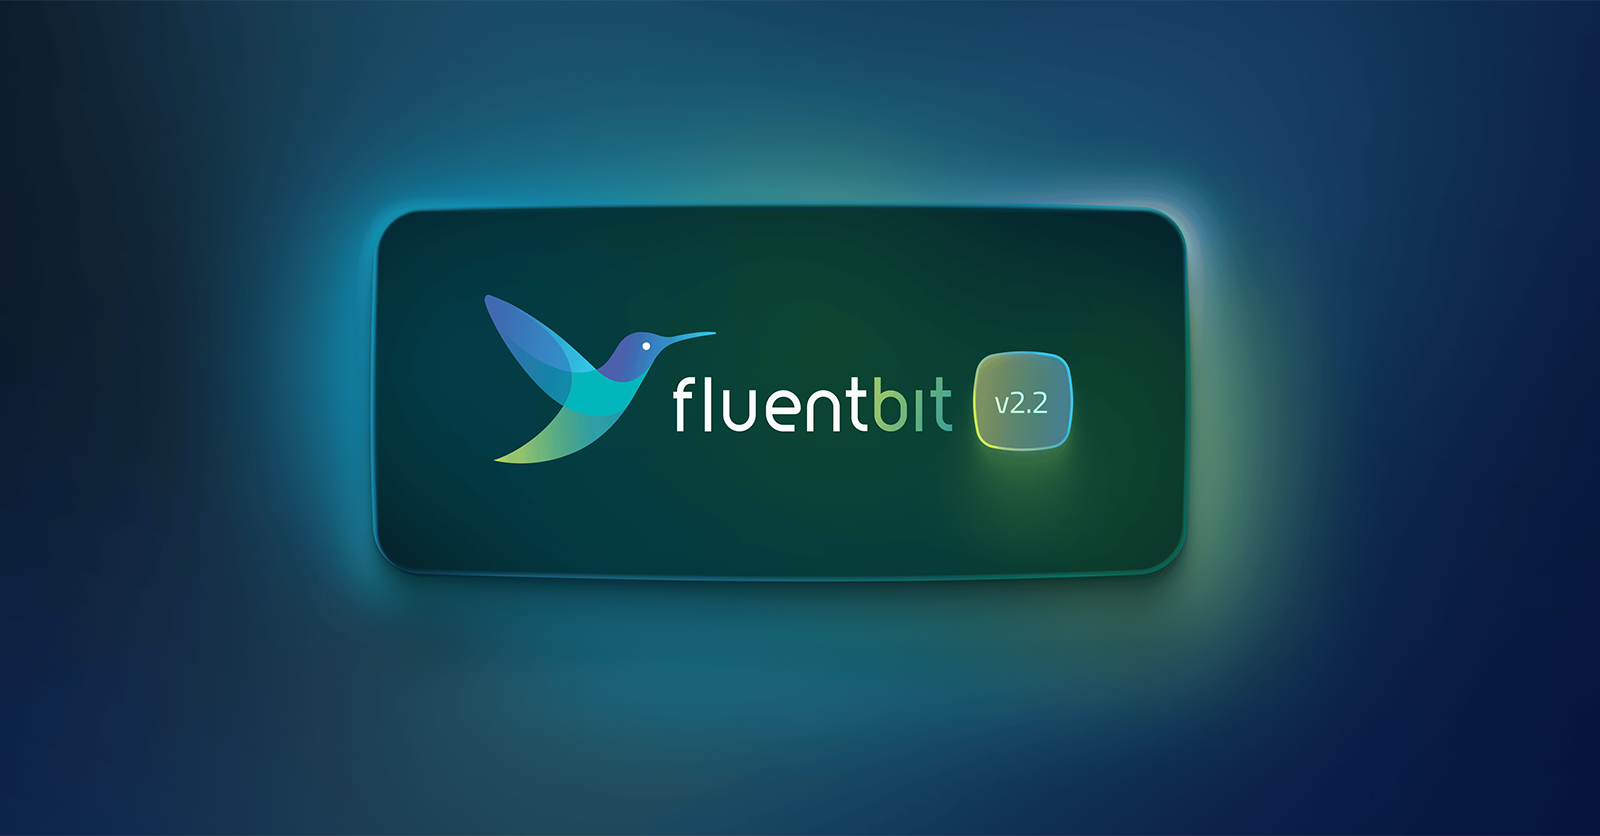 Fluent Bit version 2.2